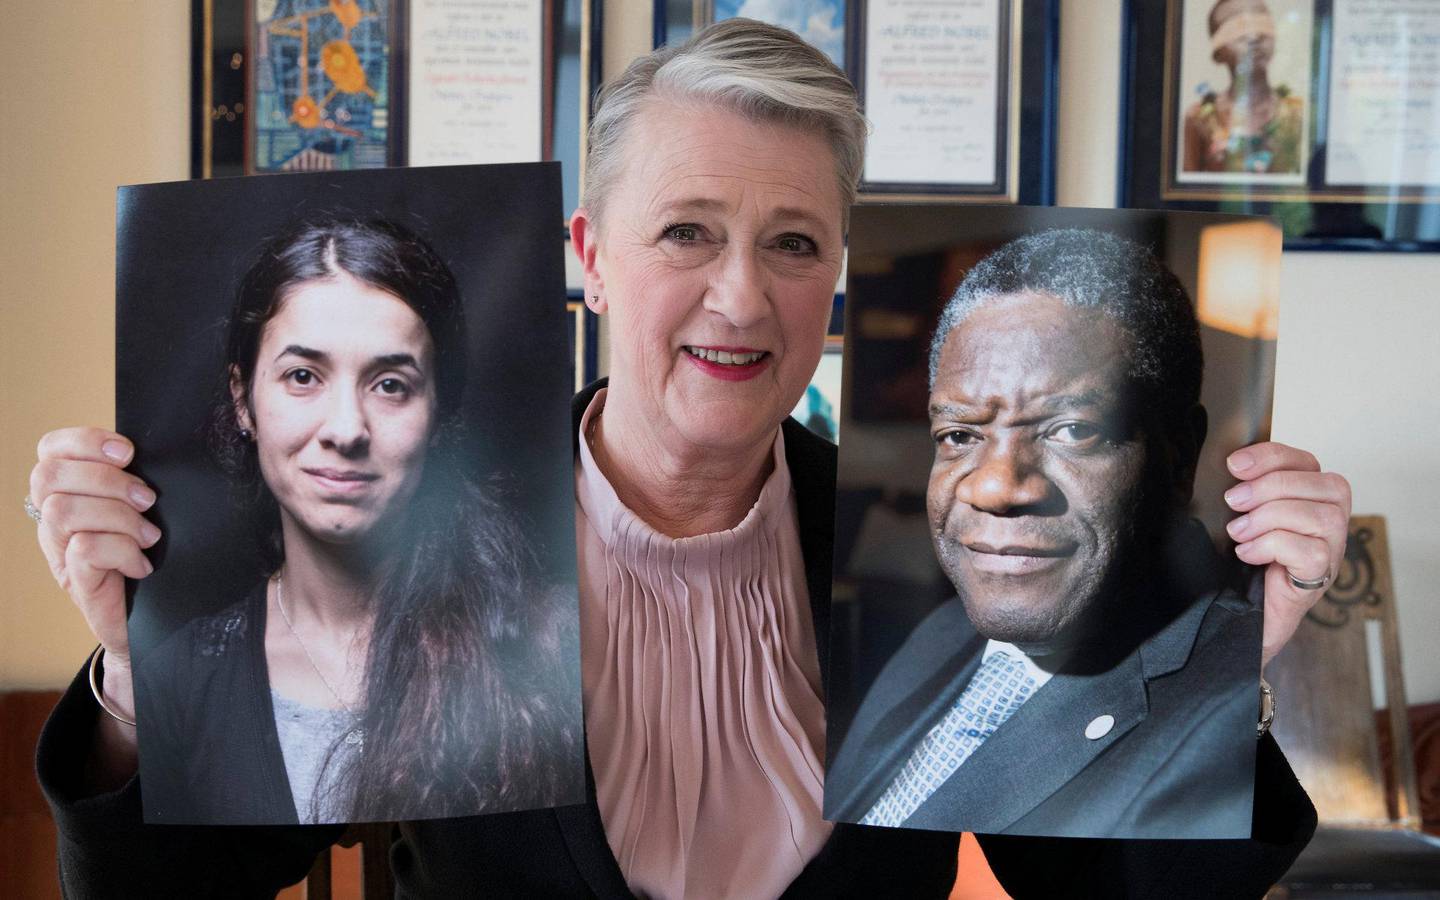 DELT I TO: Berit Reiss-Andersen, leder av Nobelkomiteen, med bilde av Denis Mukwege og Nadia Murad. FOTO: NTB SCANPIX